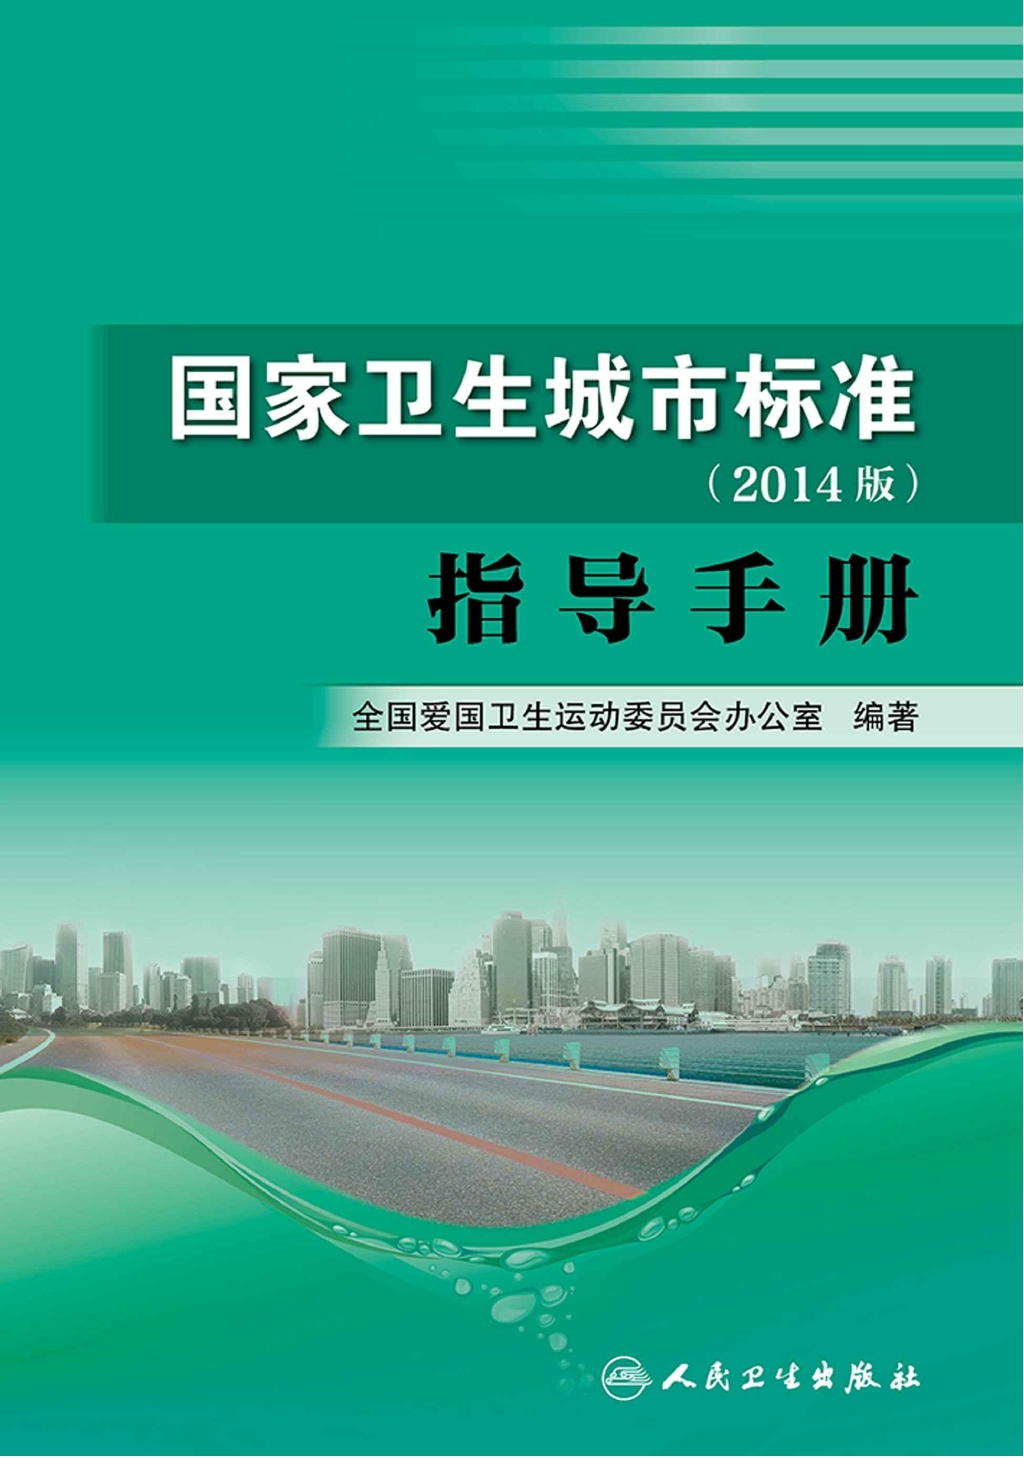 国家卫生城市标准(2014版)指导手册